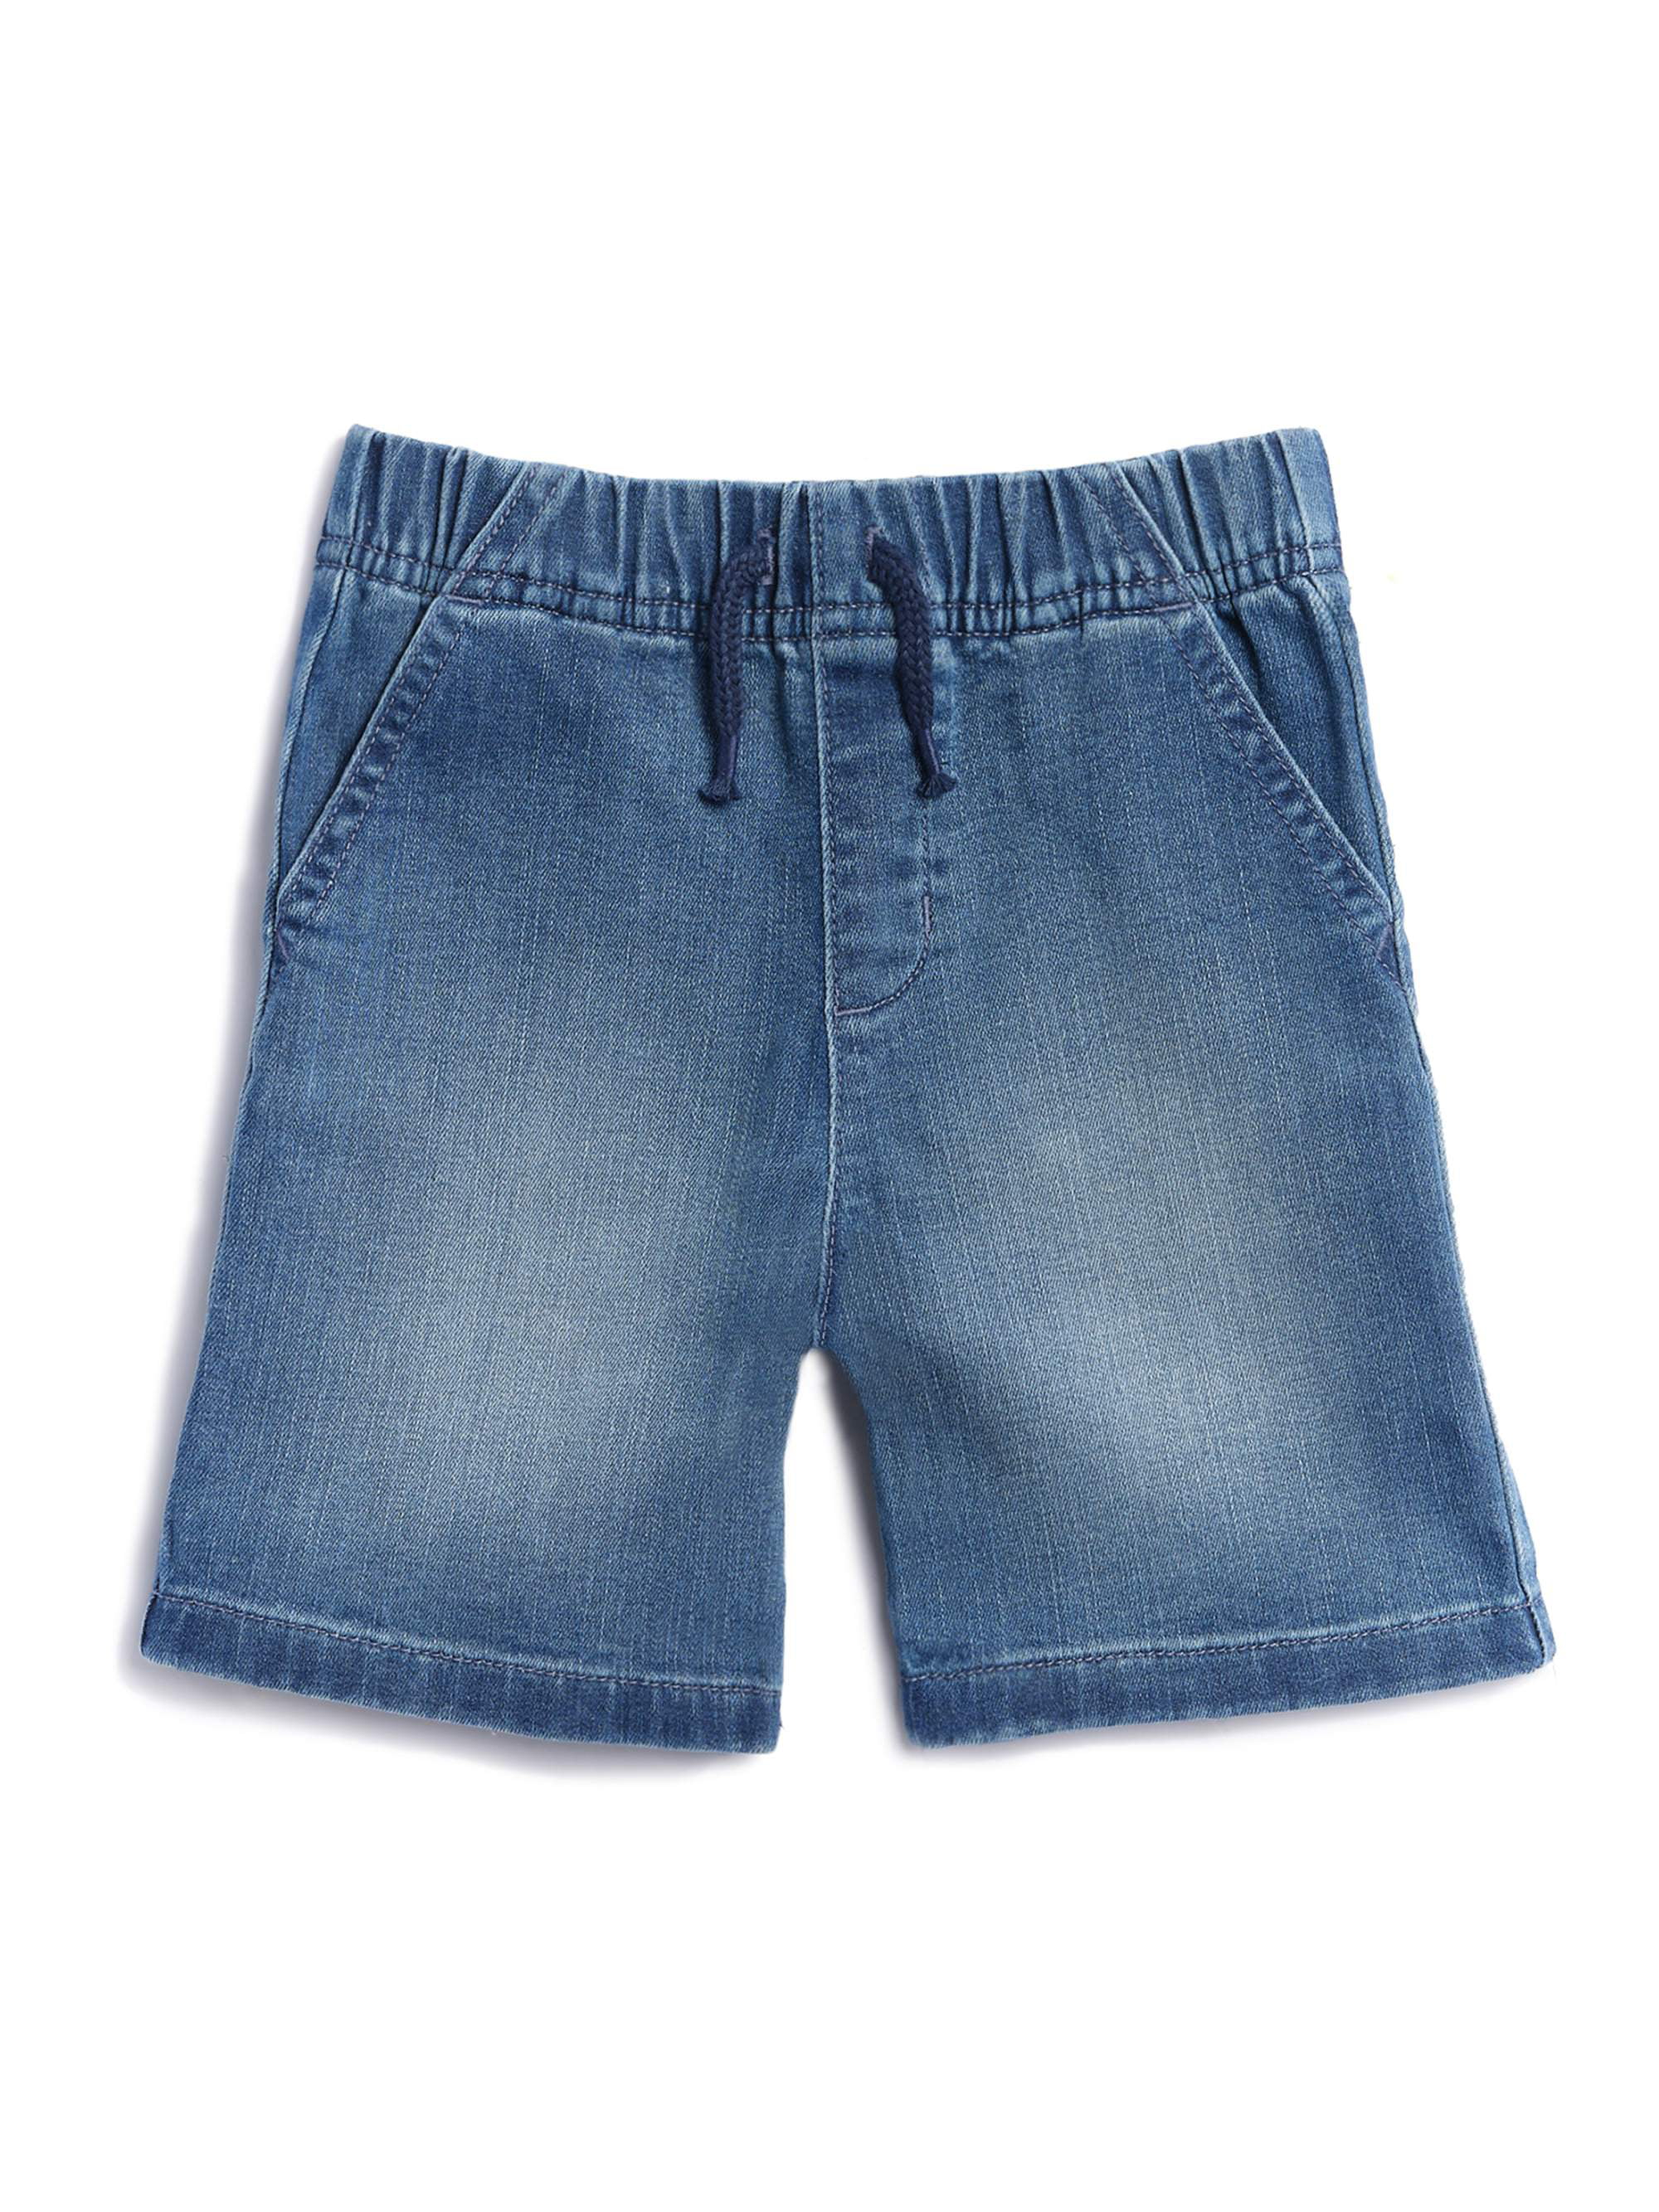 Garanimals Toddler Boys' Denim Shorts - Walmart.com